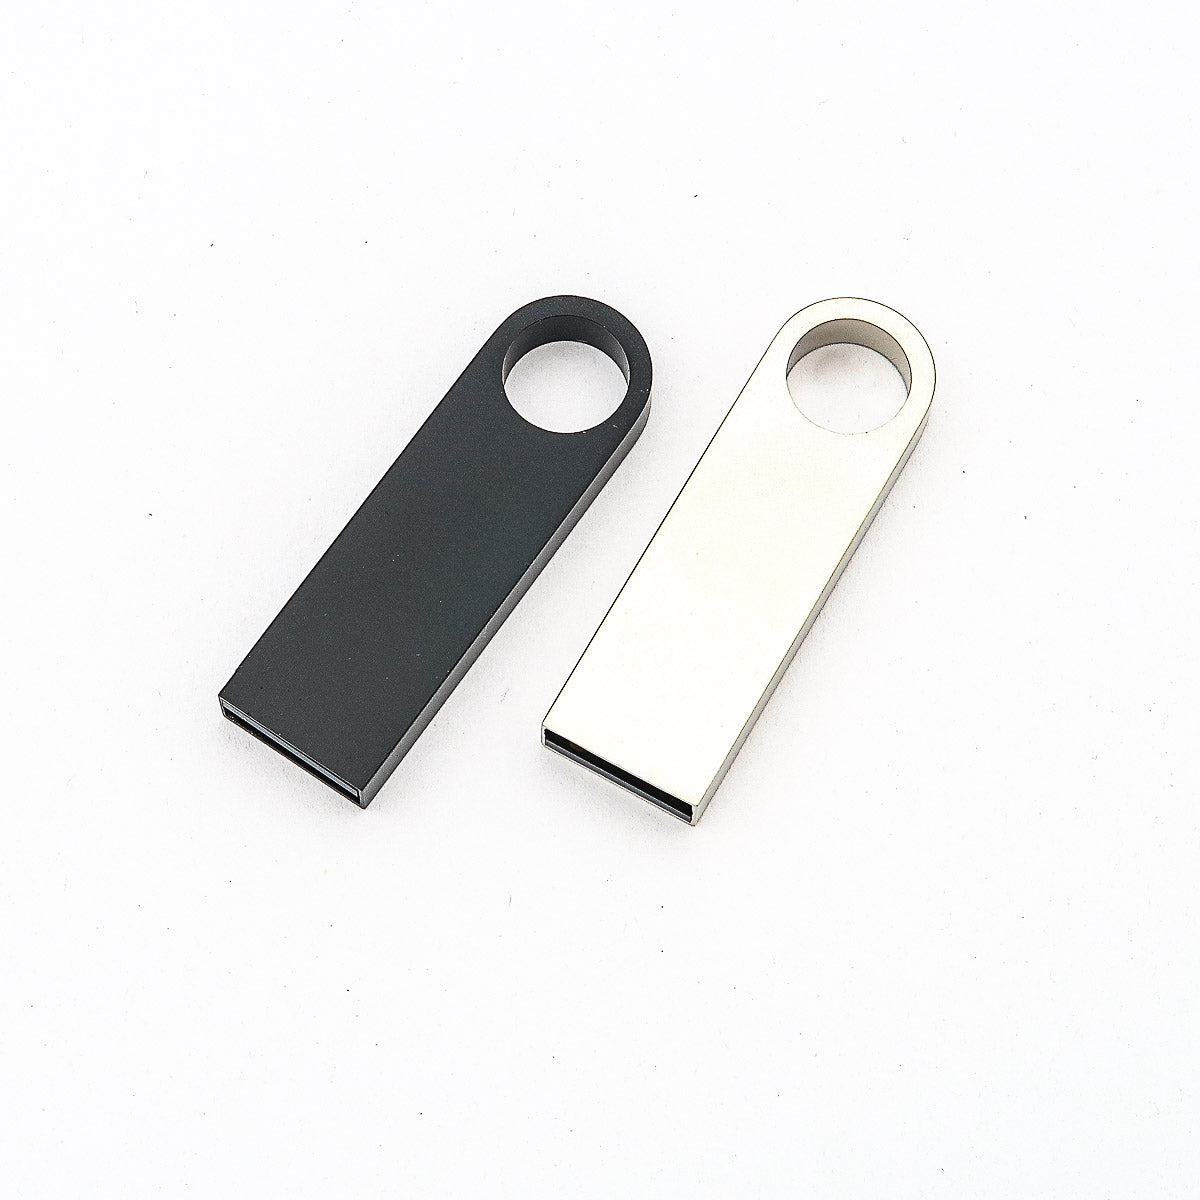 Chiave USB personalizzata con l'incisione di un nome o di un logo